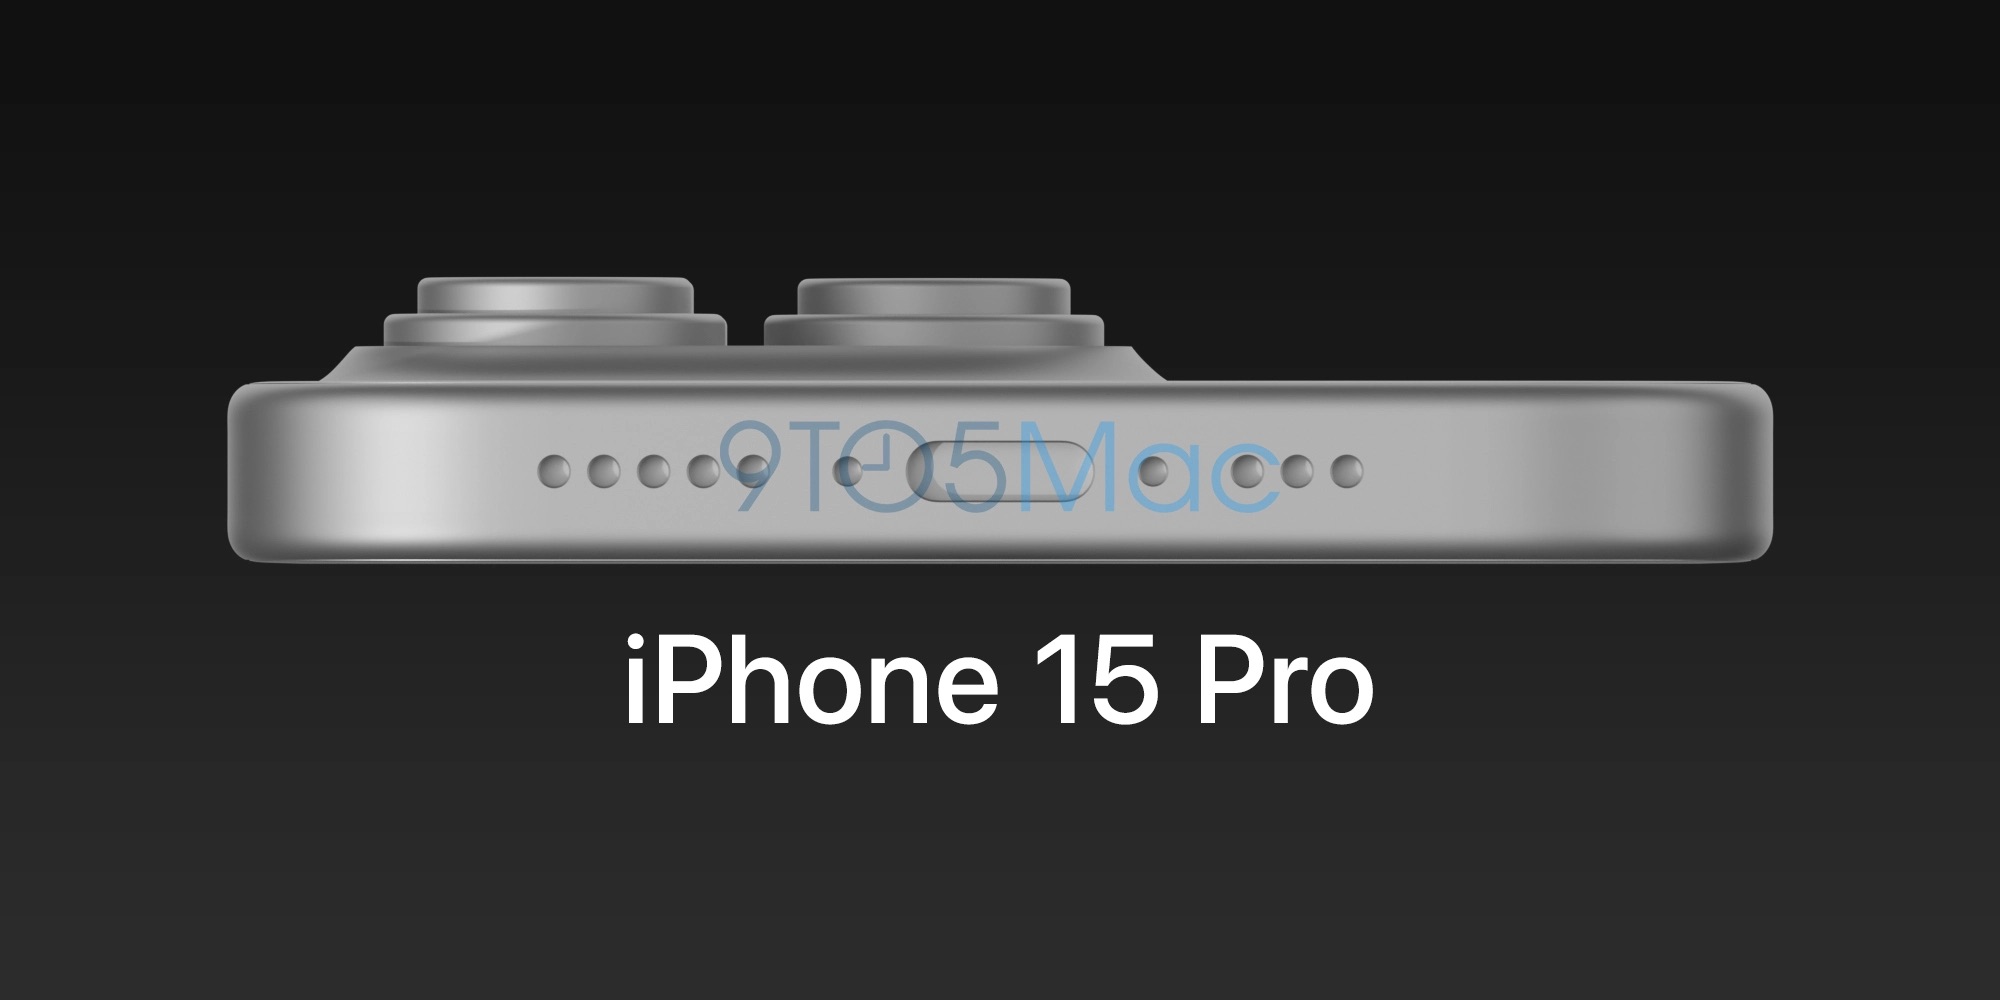 Imagen generada por ordenador de lo que se supone que será el iPhone 15 Pro